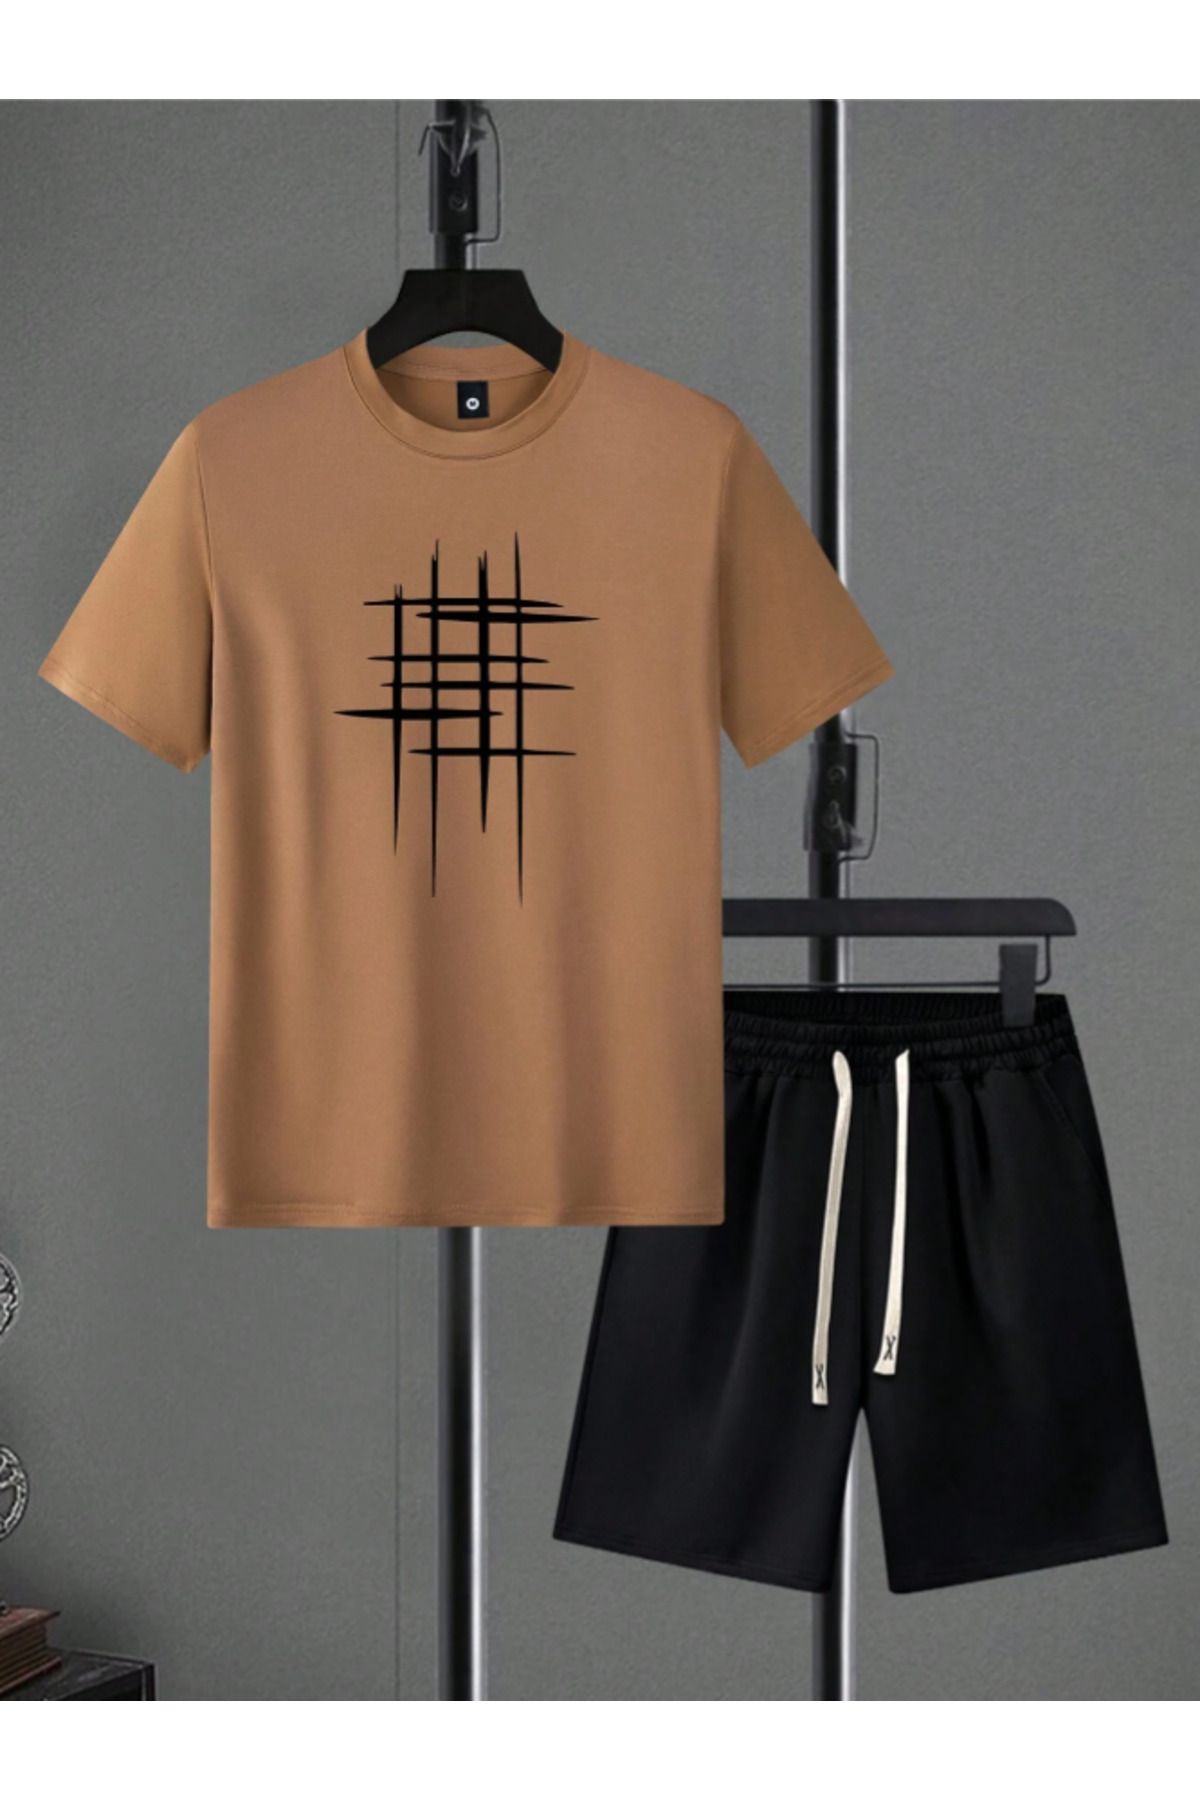 Revasser Unisex Kadın/Erkek Çizgili Özel Baskılı Şort T-shirt Takımı